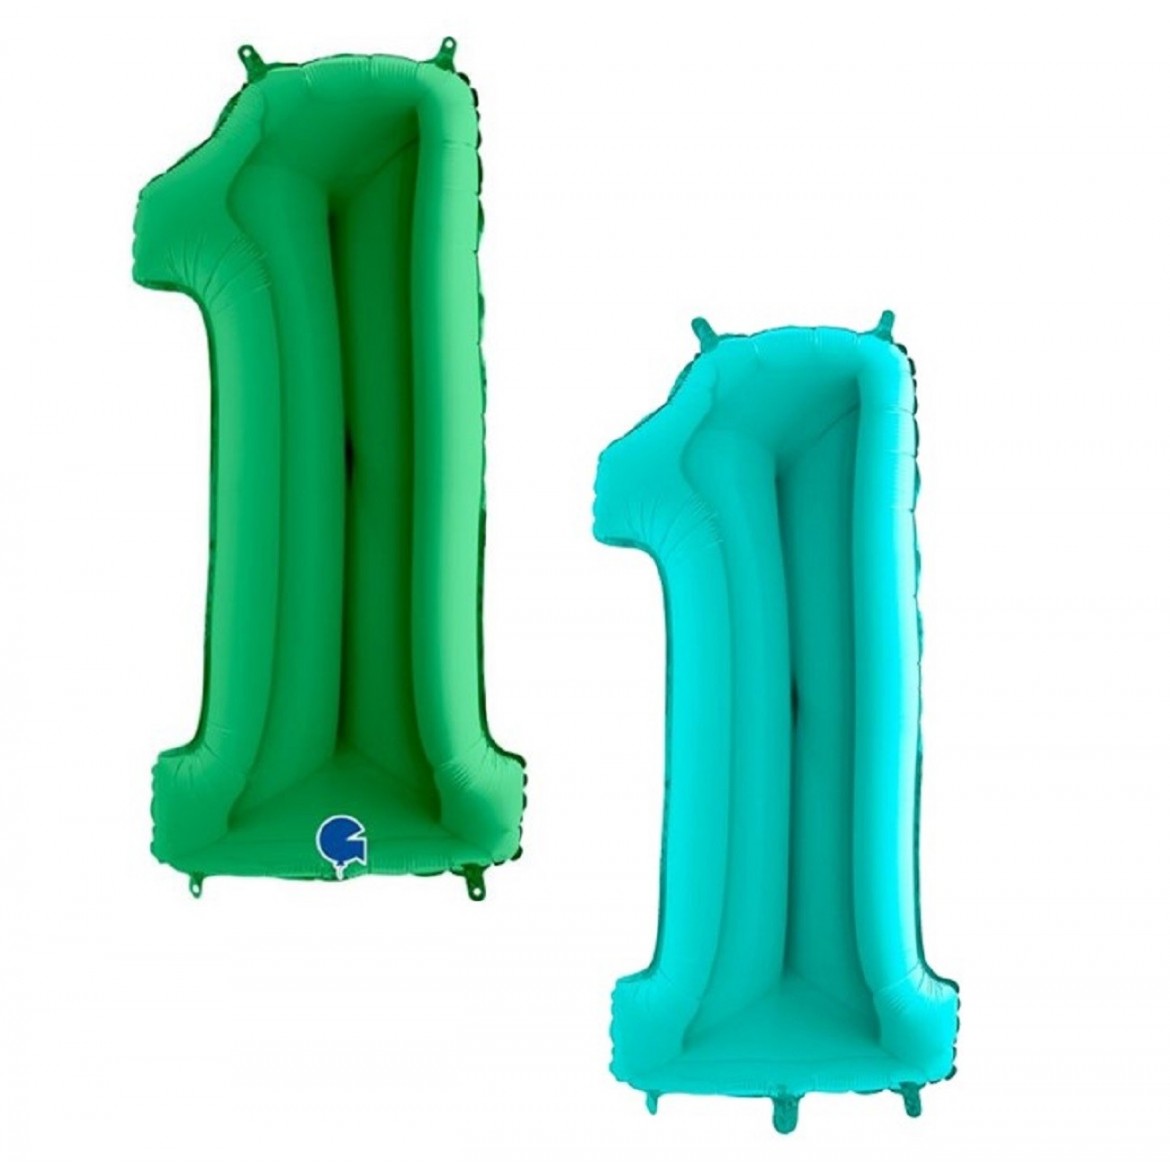 Ballon aluminium chiffre vert turquoise